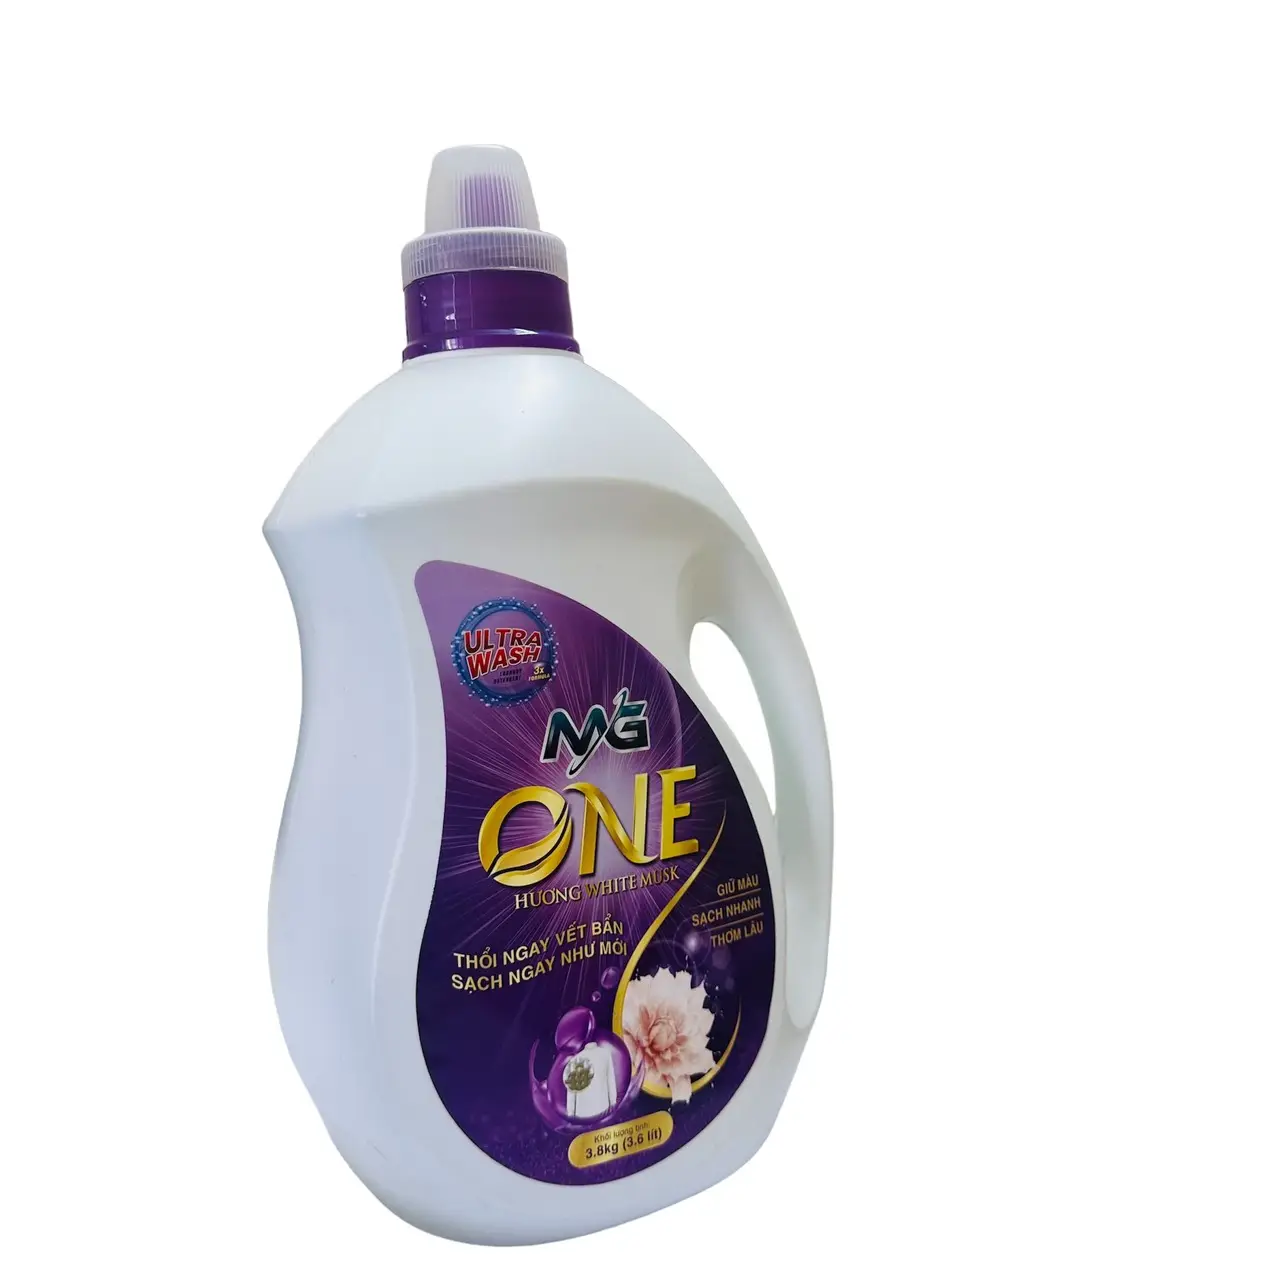 ボトル入りパウダークリーンアウトフォーマットホワイトムスクの香りユーザーの要件に応じてエラー修正をカスタマイズ洗剤の販売